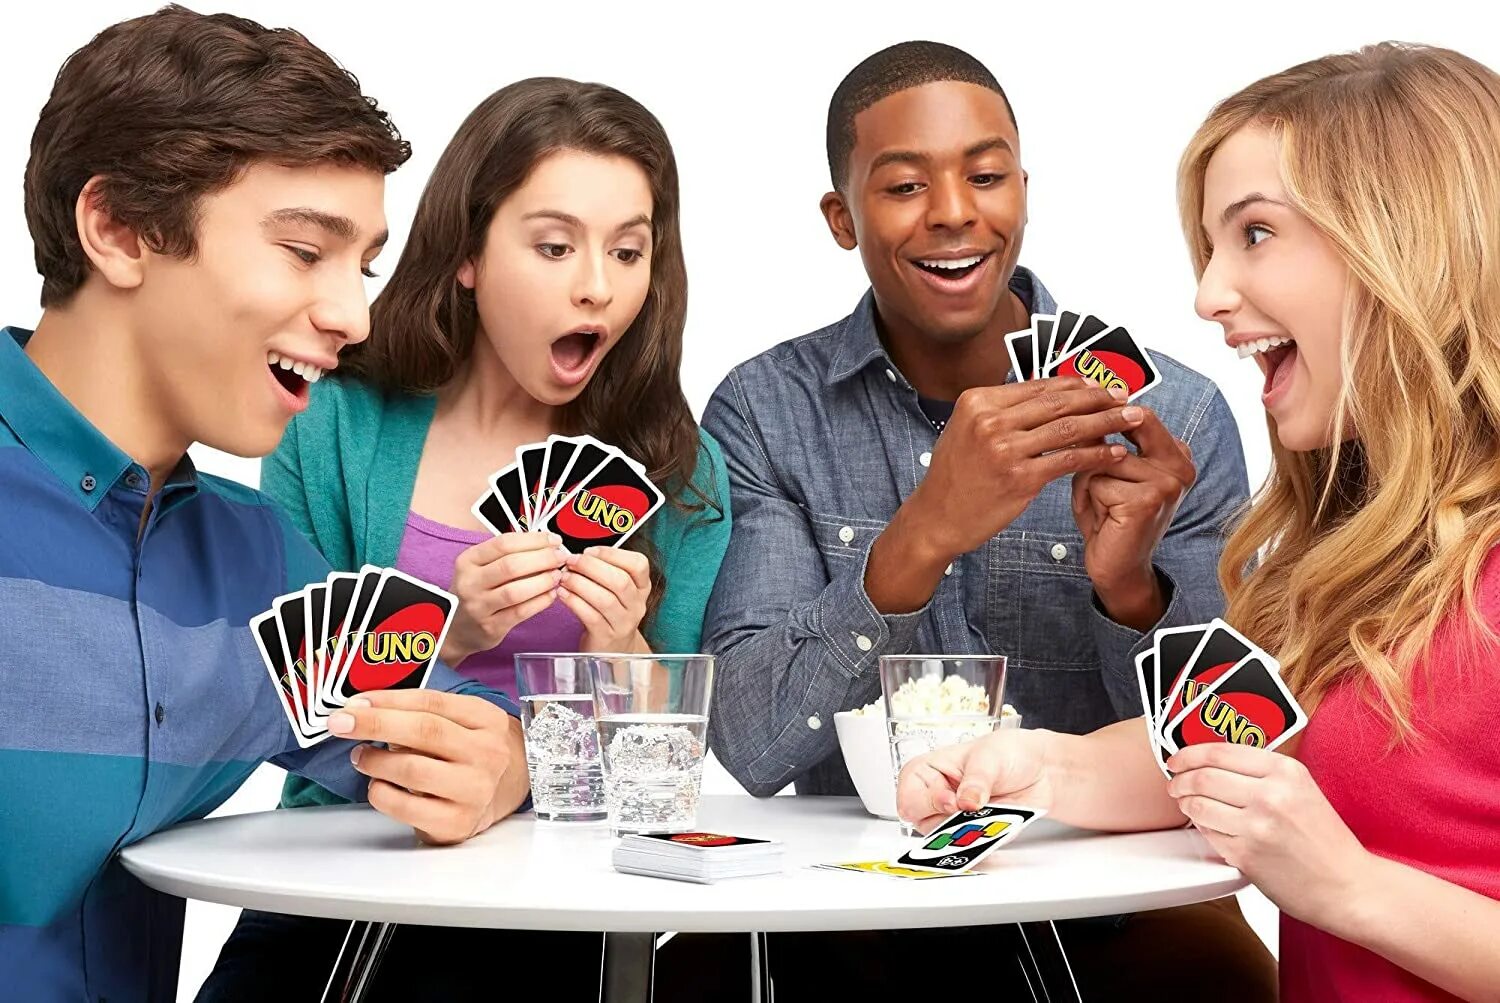 Cards playing games. Люди играющие в настольные игры. Уно играть. Люди играют в уно. Люди играющие в уно.